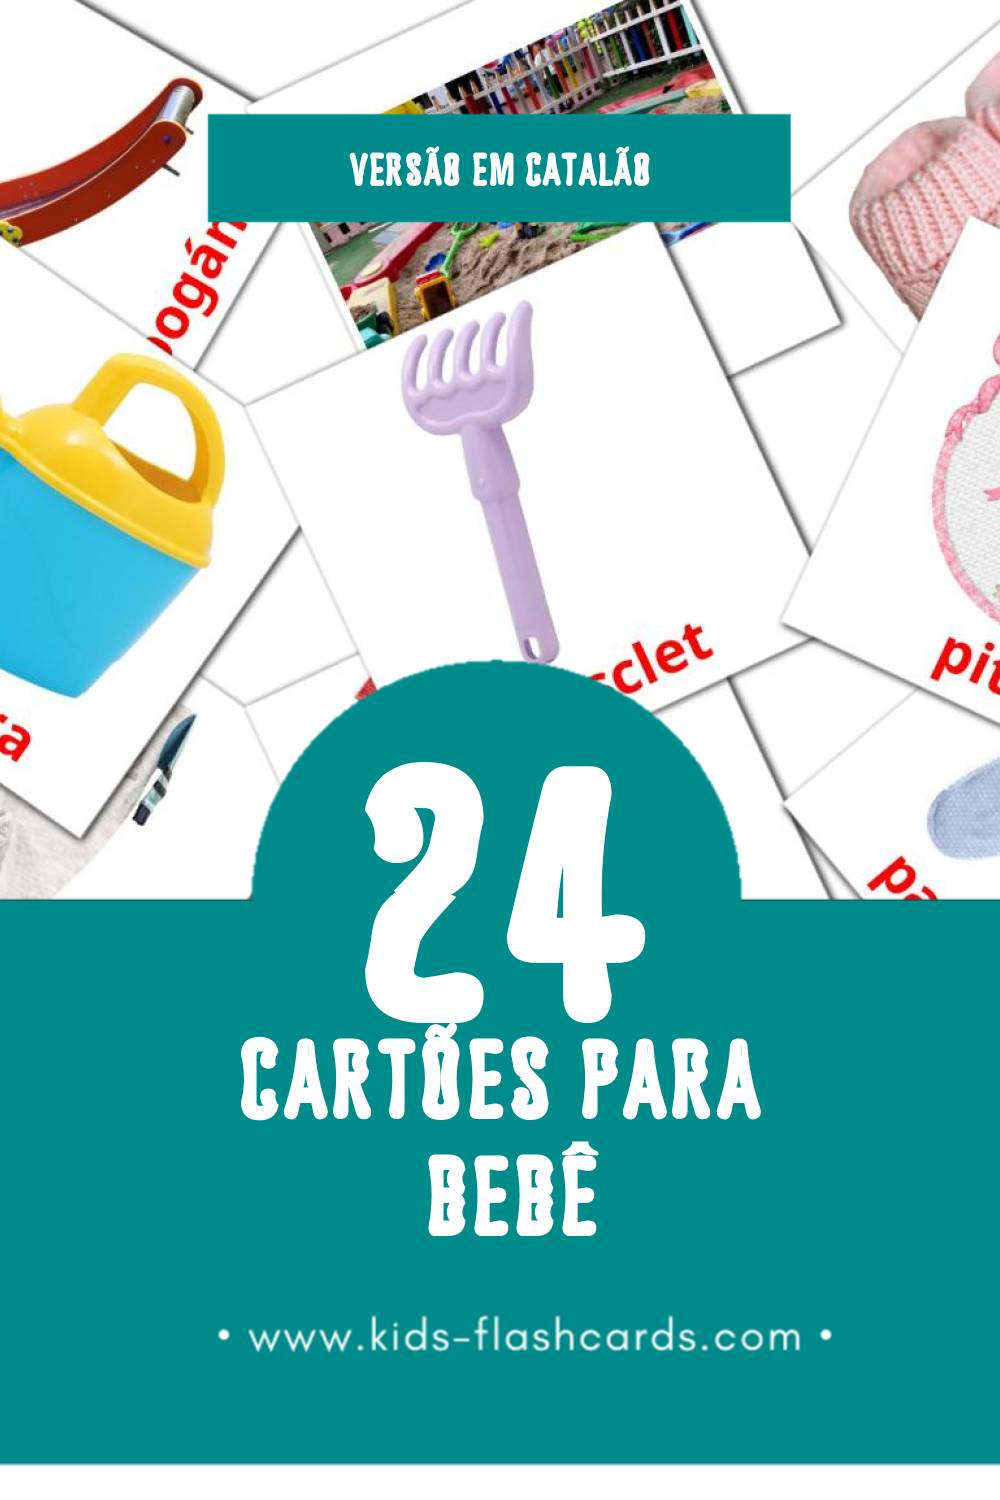 Flashcards de Nadó Visuais para Toddlers (24 cartões em Catalão)